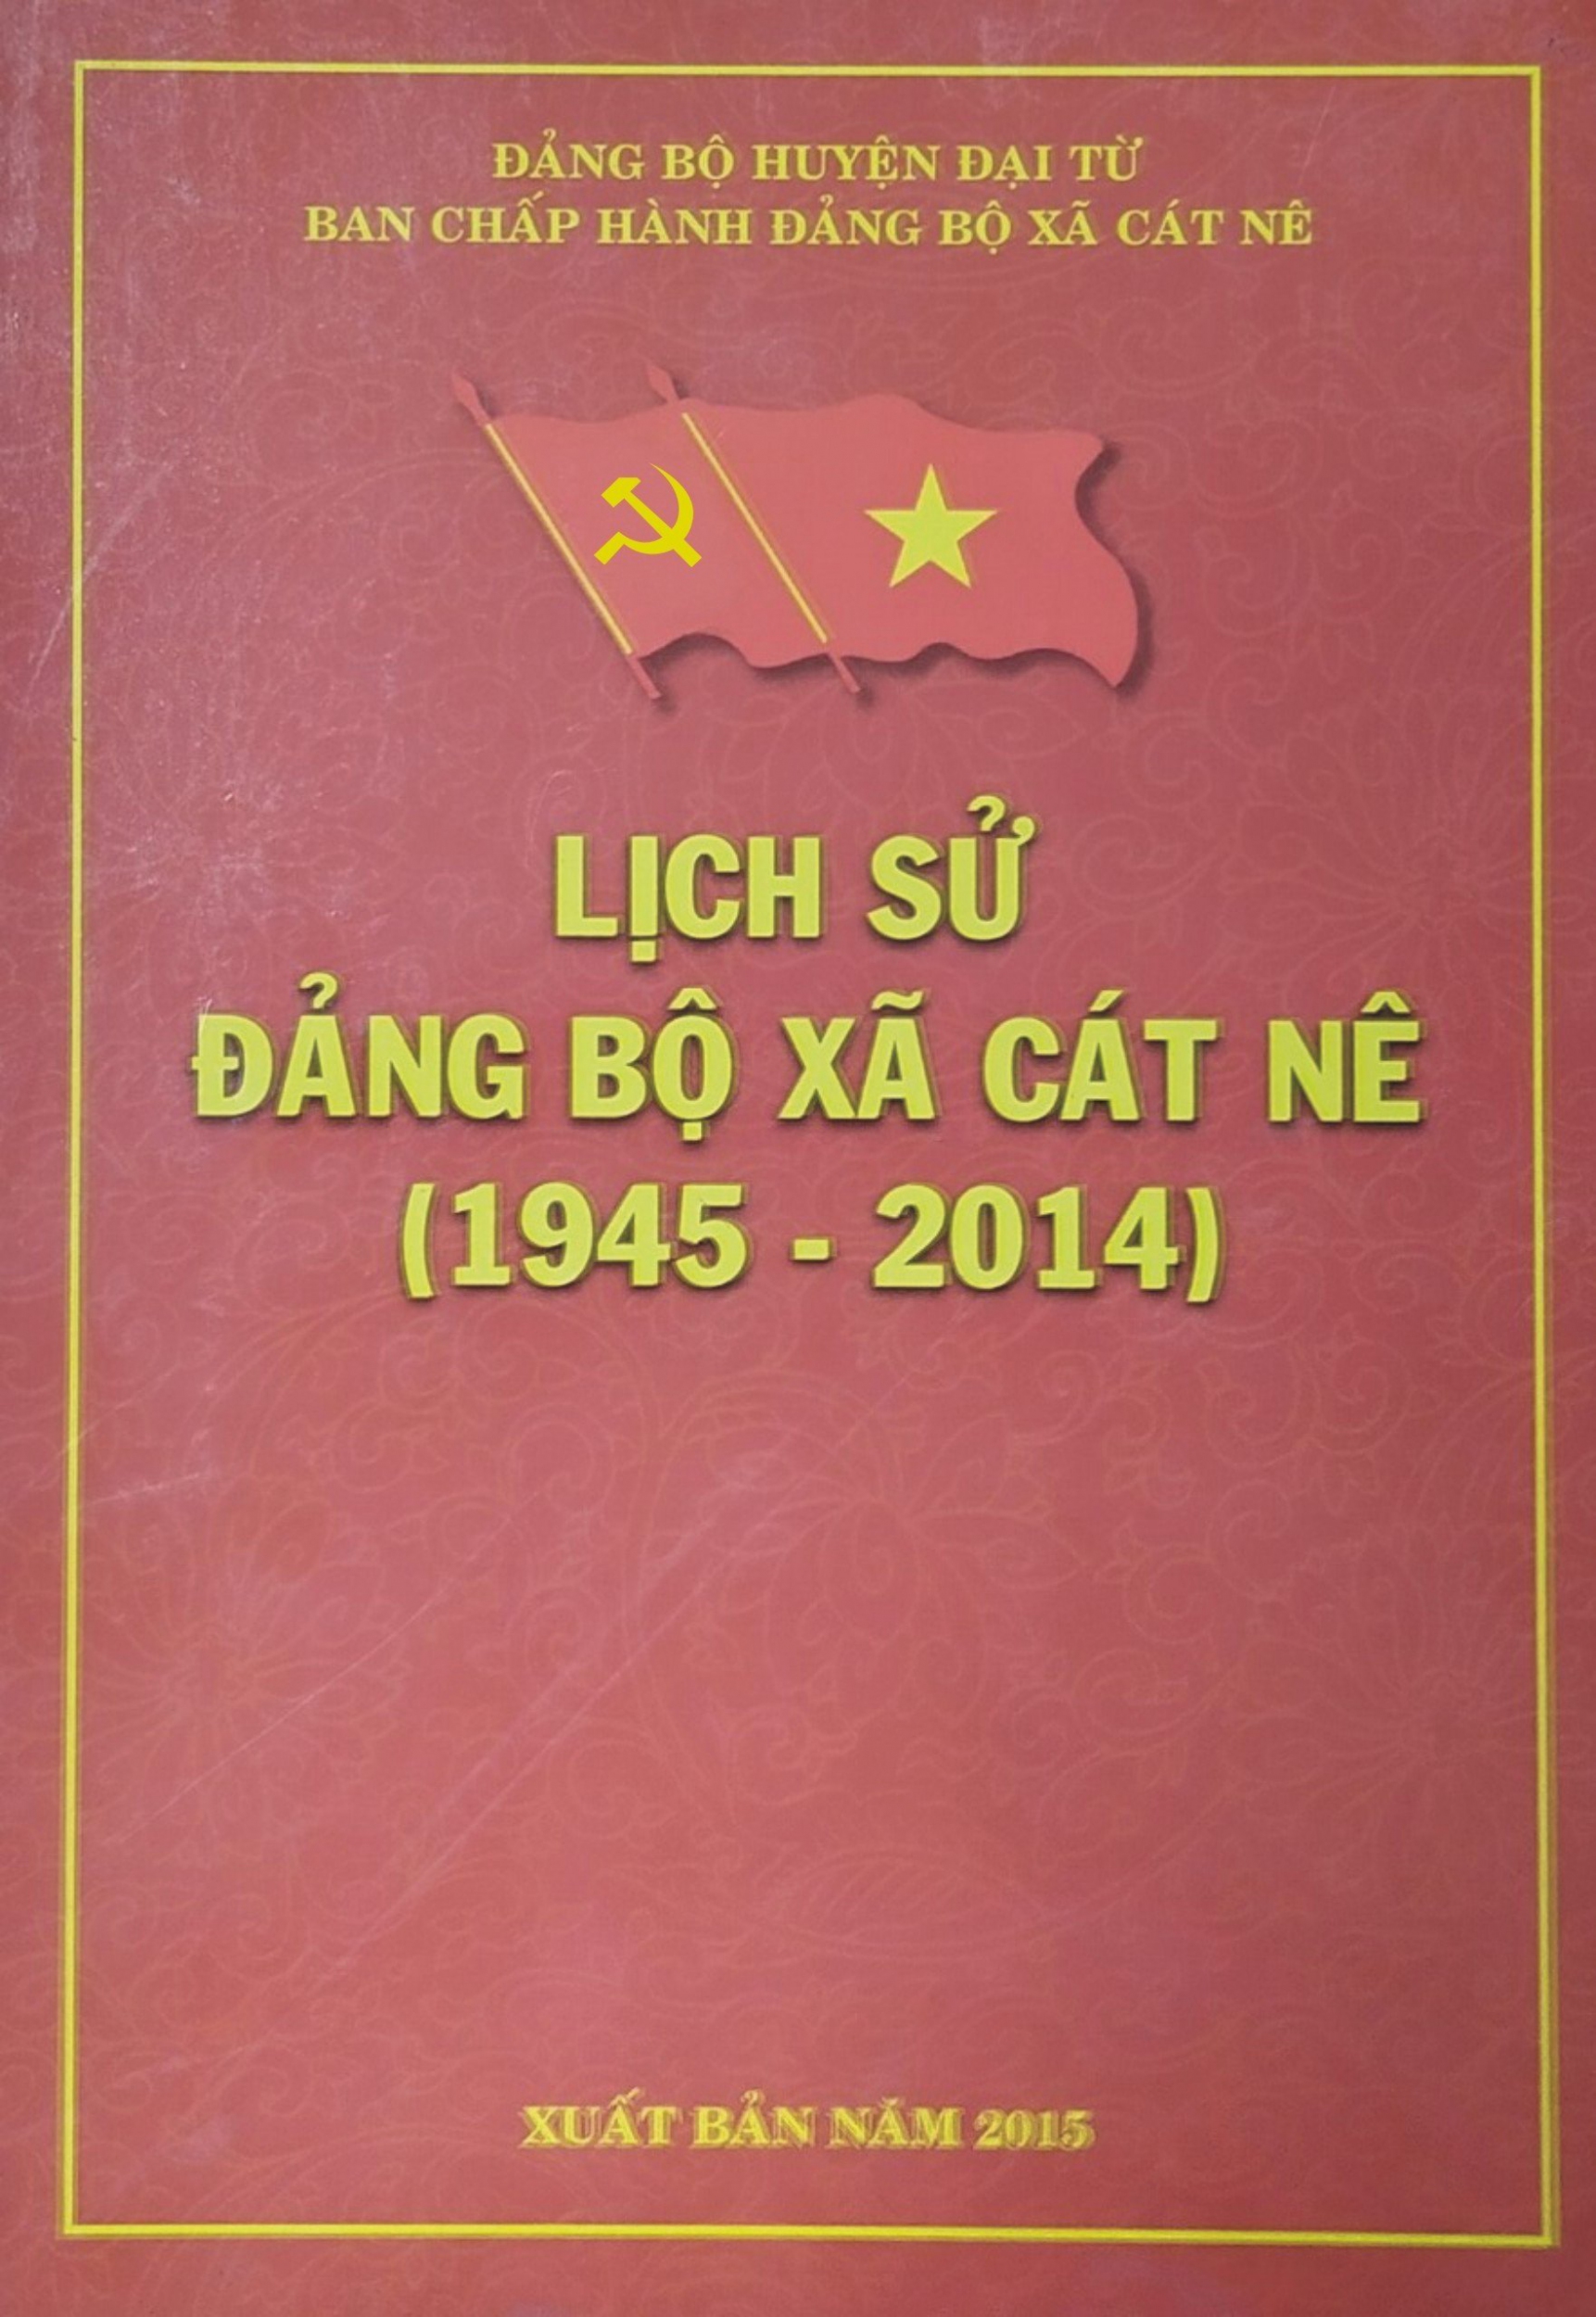 Lịch sử Đảng bộ xã Cát Nê (1945 - 2014)